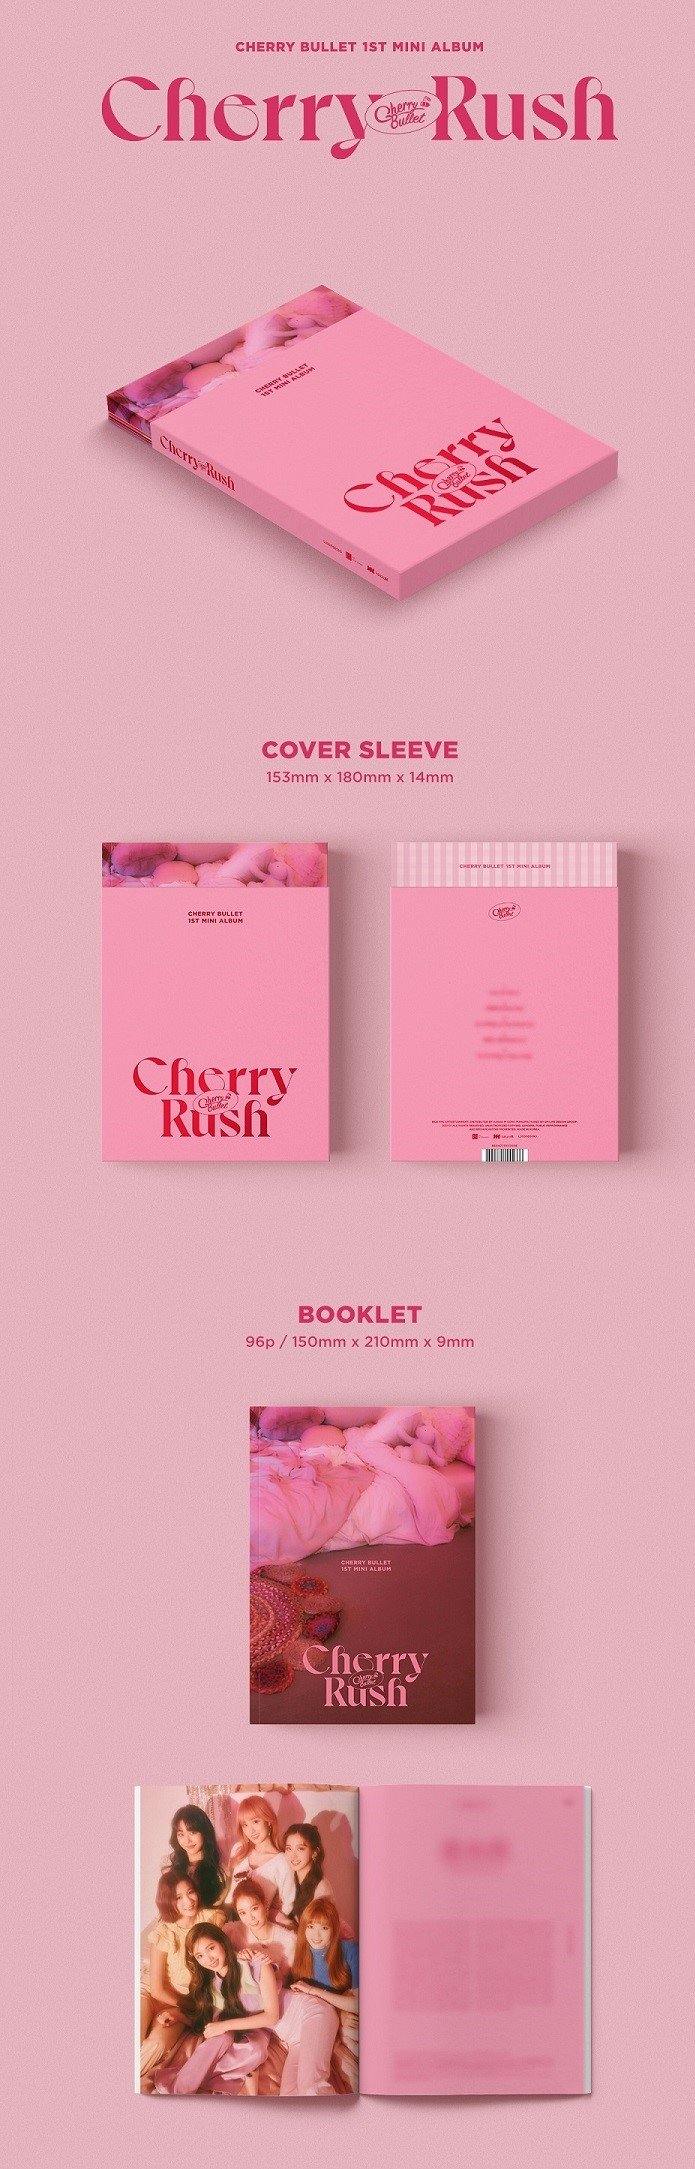 CHERRY BULLET - CHERRY RUSH (1ST MINI ALBUM) - J-Store Online